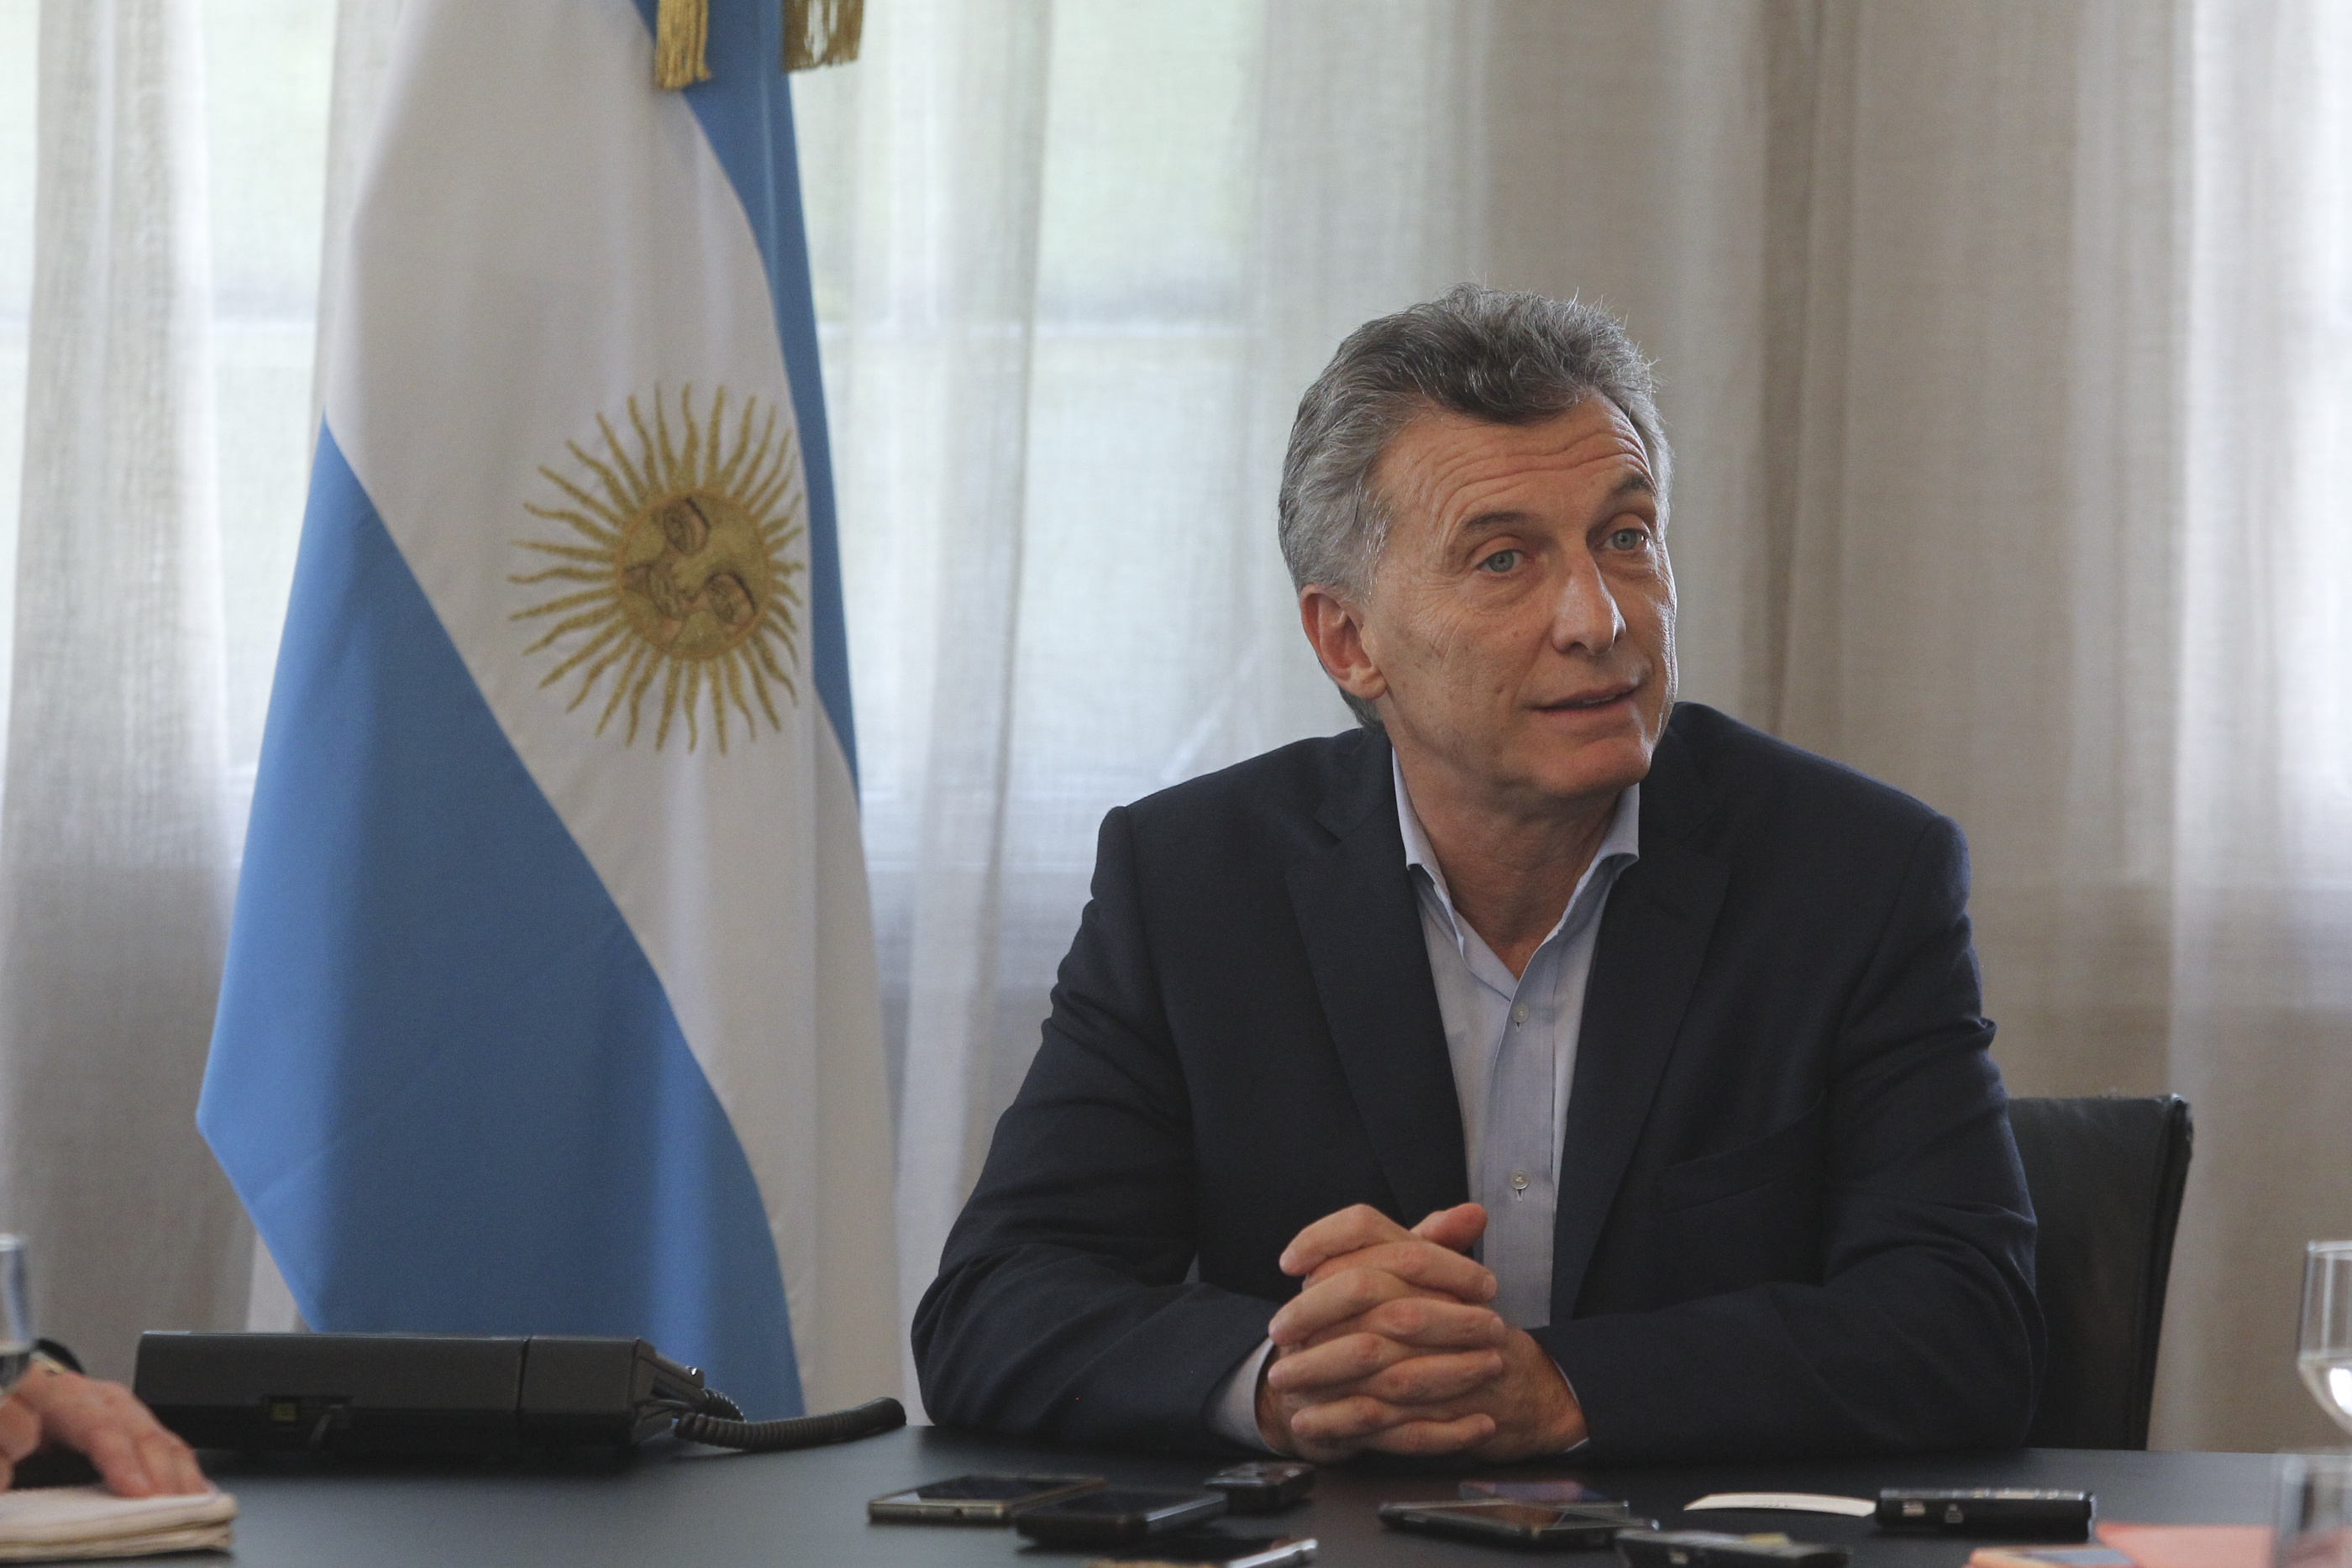 Macri intenta recuperar la imagen de su gobierno luego de los escandalosos casos del Correo Argentino y la aerolínea Avianca.